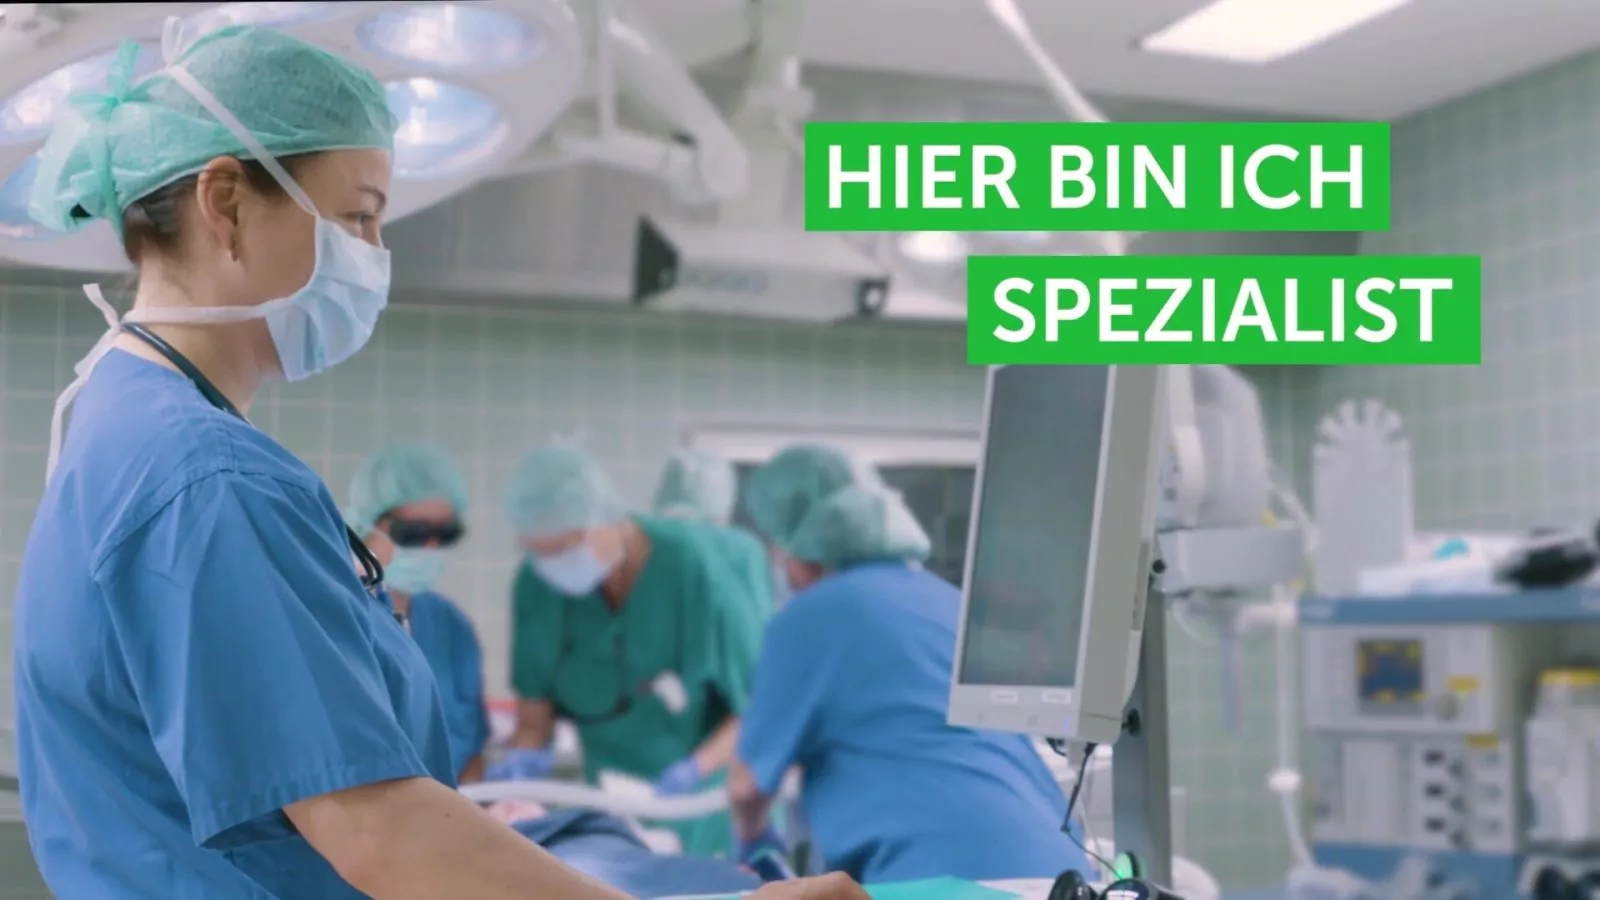 Best Company Video Gmbh Kinderkrankenhaus Auf Der Bult Recruiting Film Spezialist